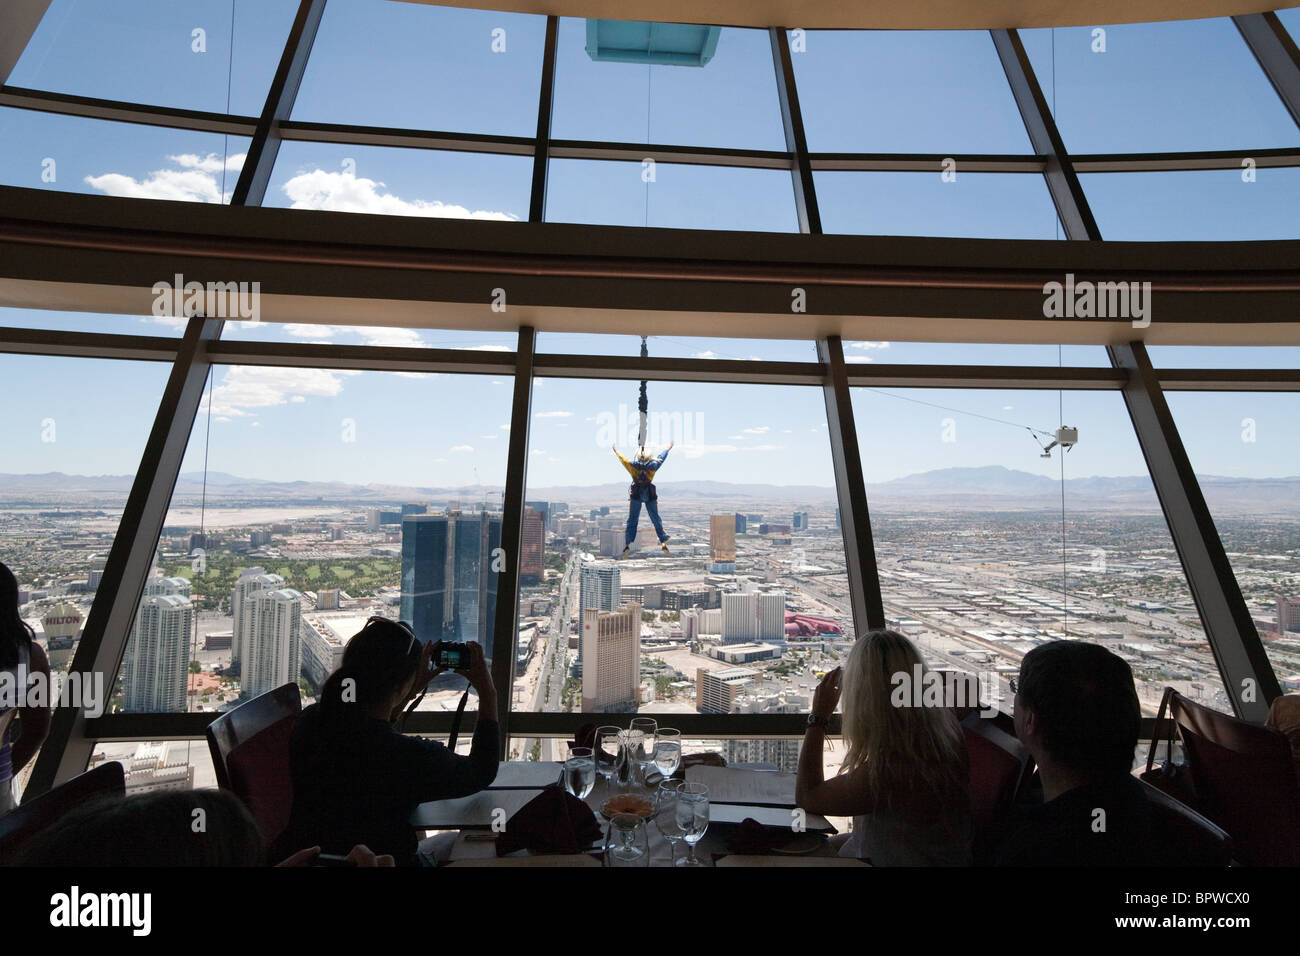 Abendessen im Top of the World Restaurant im Strat oder Stratosphere Hotel  Tower & Casino, während Sie essen, können Sie einen Sprung über den Himmel  sehen, Las Vegas USA Stockfotografie - Alamy